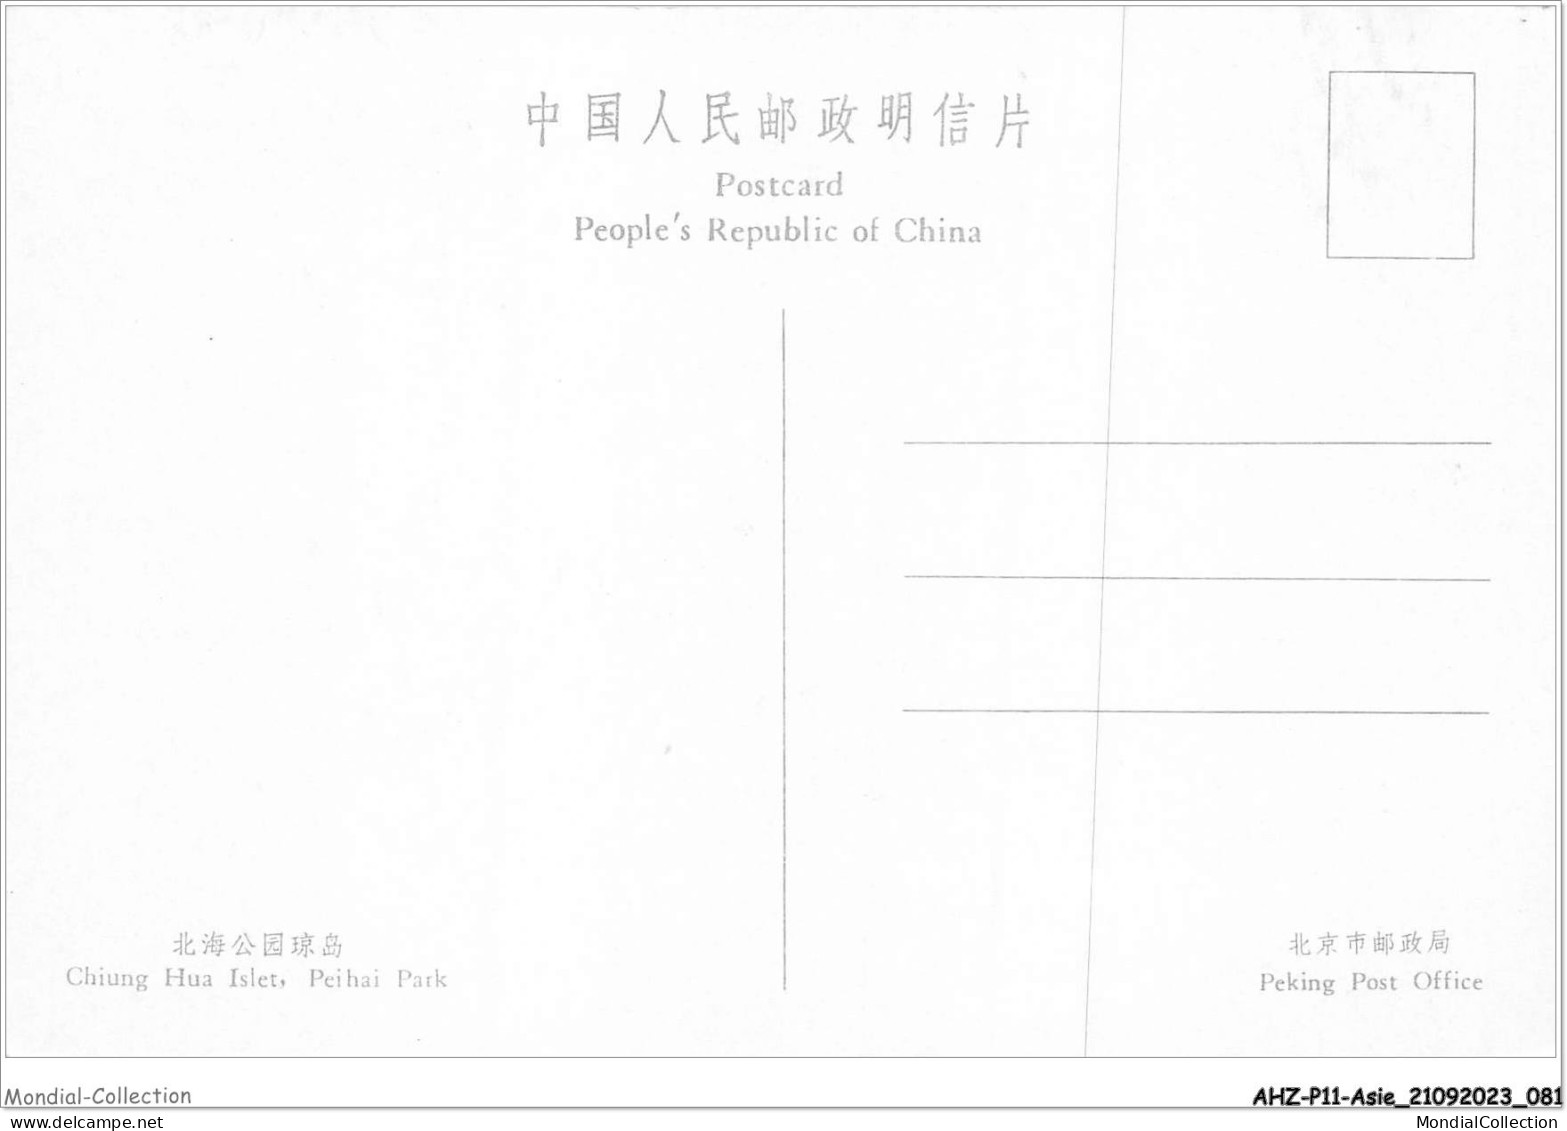 AHZP11-CHINE-1020 - CHIANG HUA ISLET - PEI HAI PARK - China